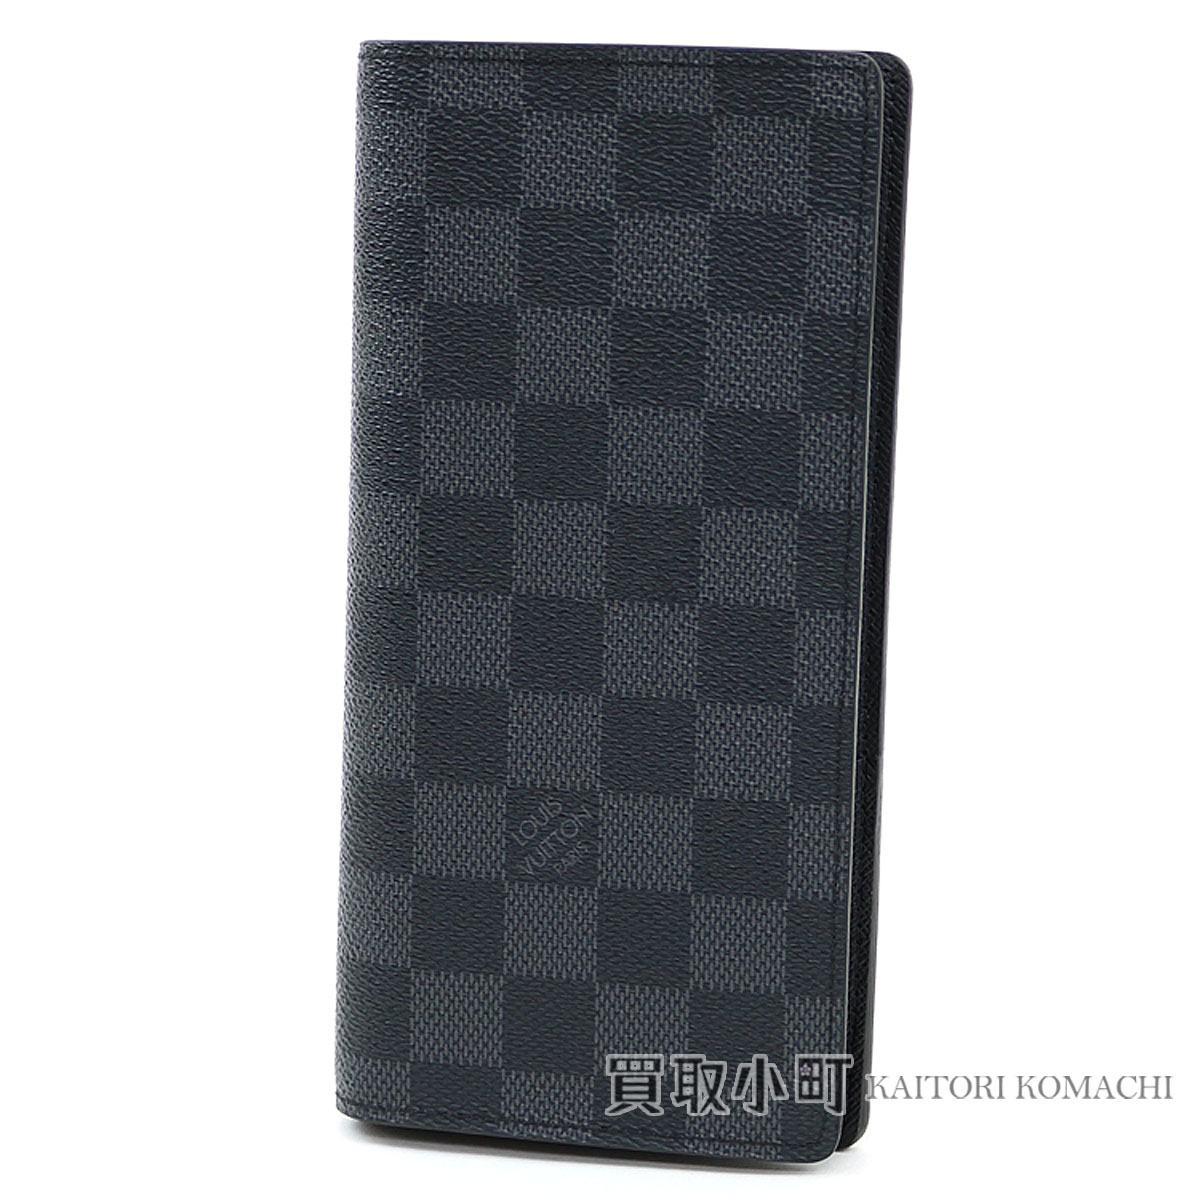 KAITORIKOMACHI: Louis Vuitton N62665 ポルトフォイユブラザダミエグラフィット folio long wallet men wallet black ...